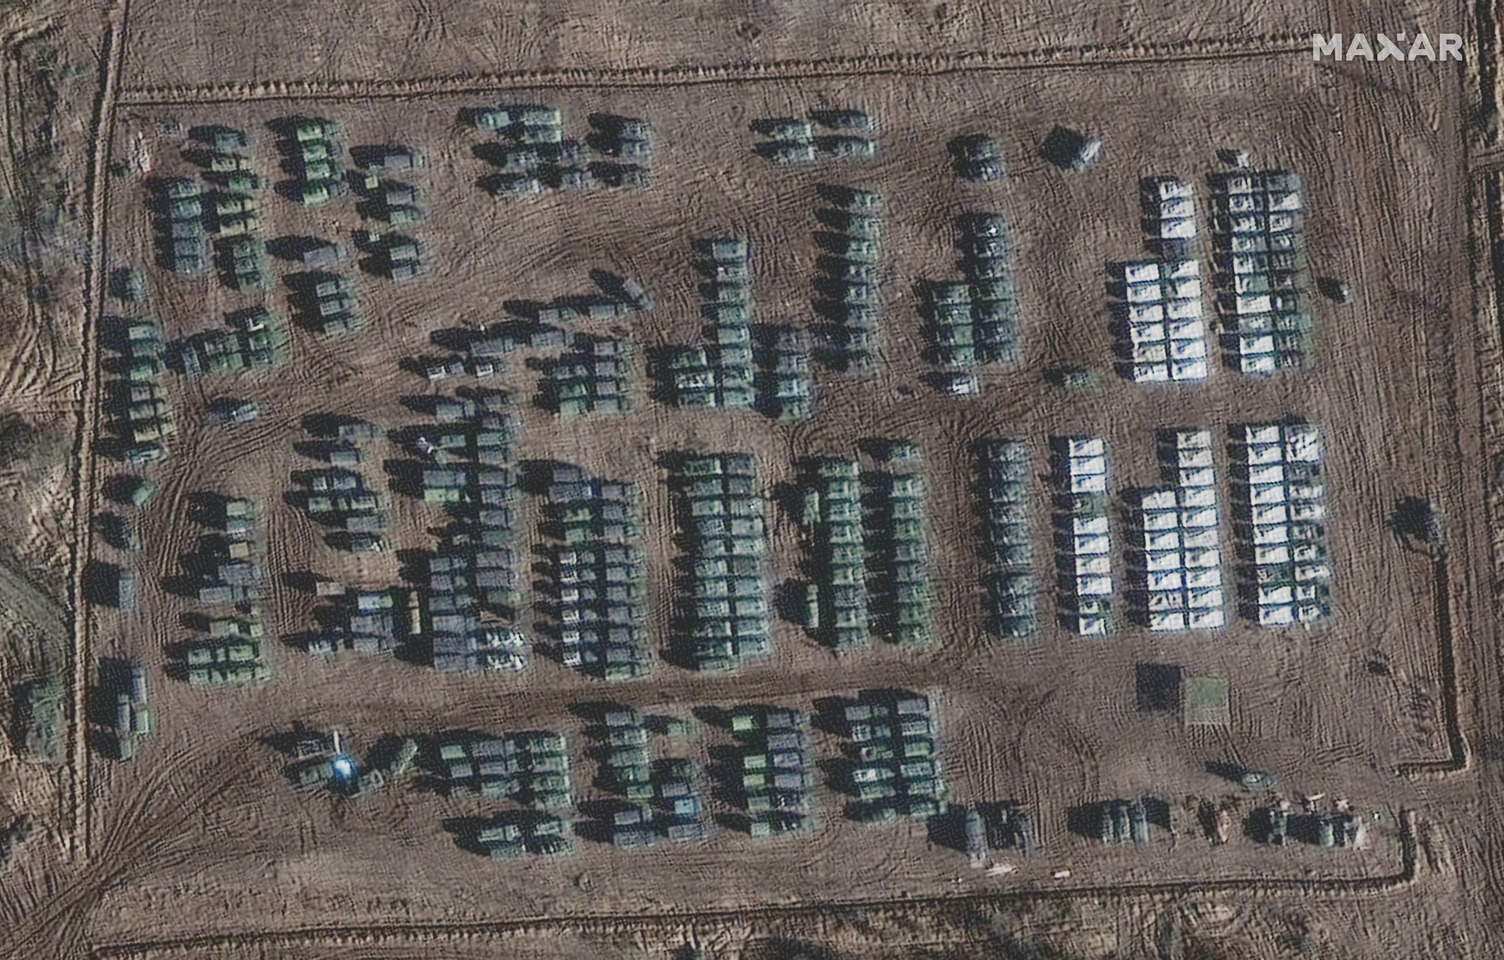 Ουκρανία: Δορυφορικές εικόνες αποκαλύπτουν συγκέντρωση Ρωσικών δυνάμεων στα σύνορα | OnAlert